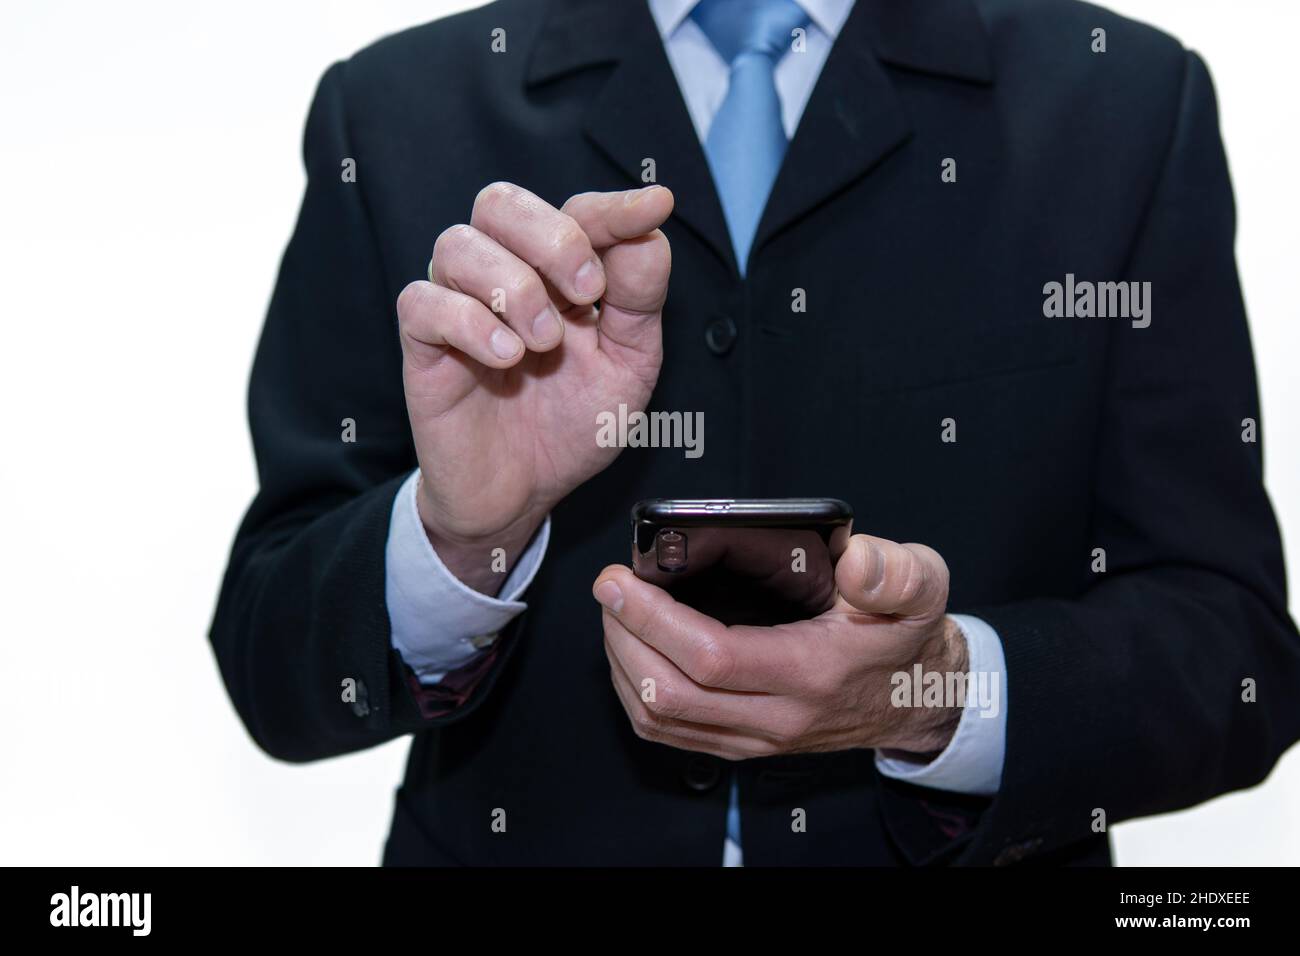 Homme d'affaires méconnu utilisant un smartphone, fond blanc Banque D'Images